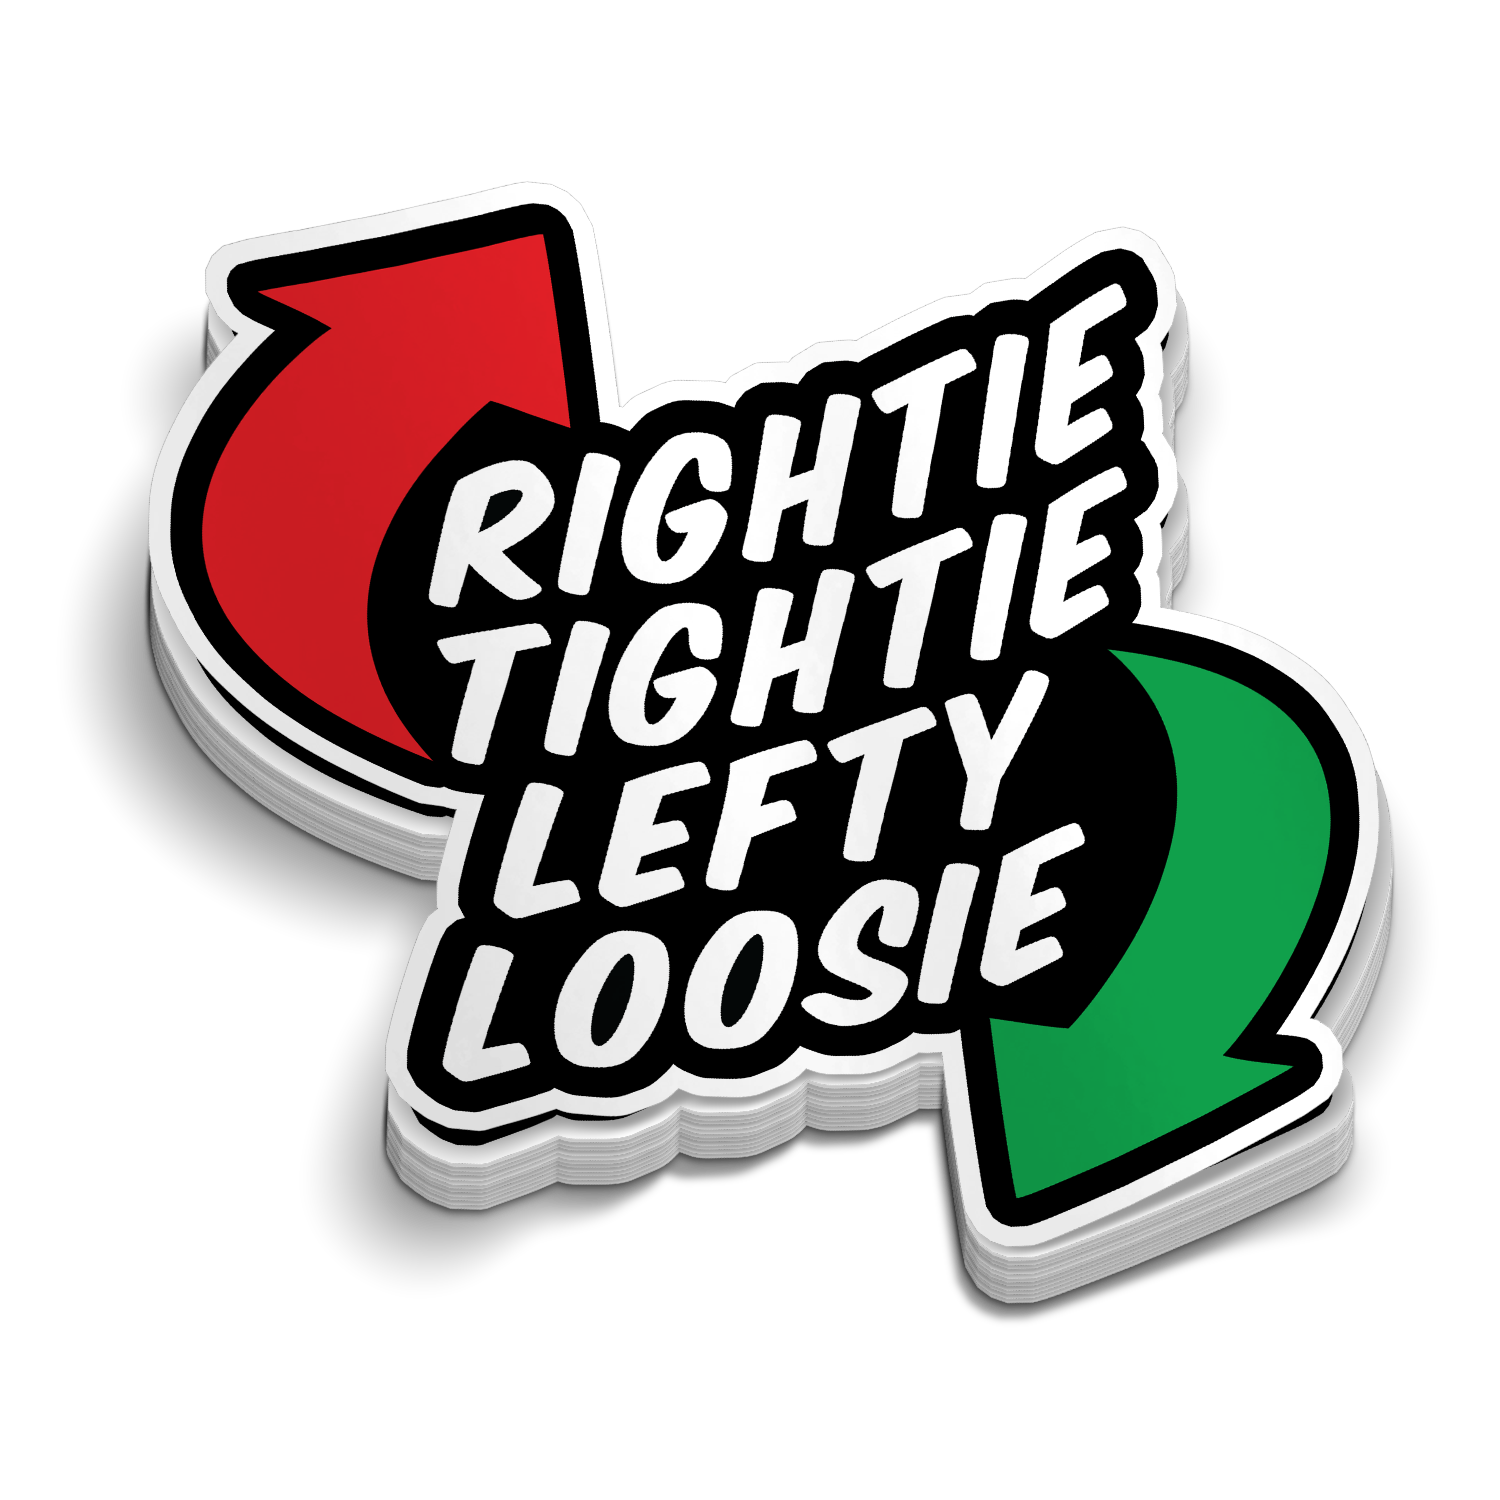 Rightie Tightie - Hard Hat Sticker